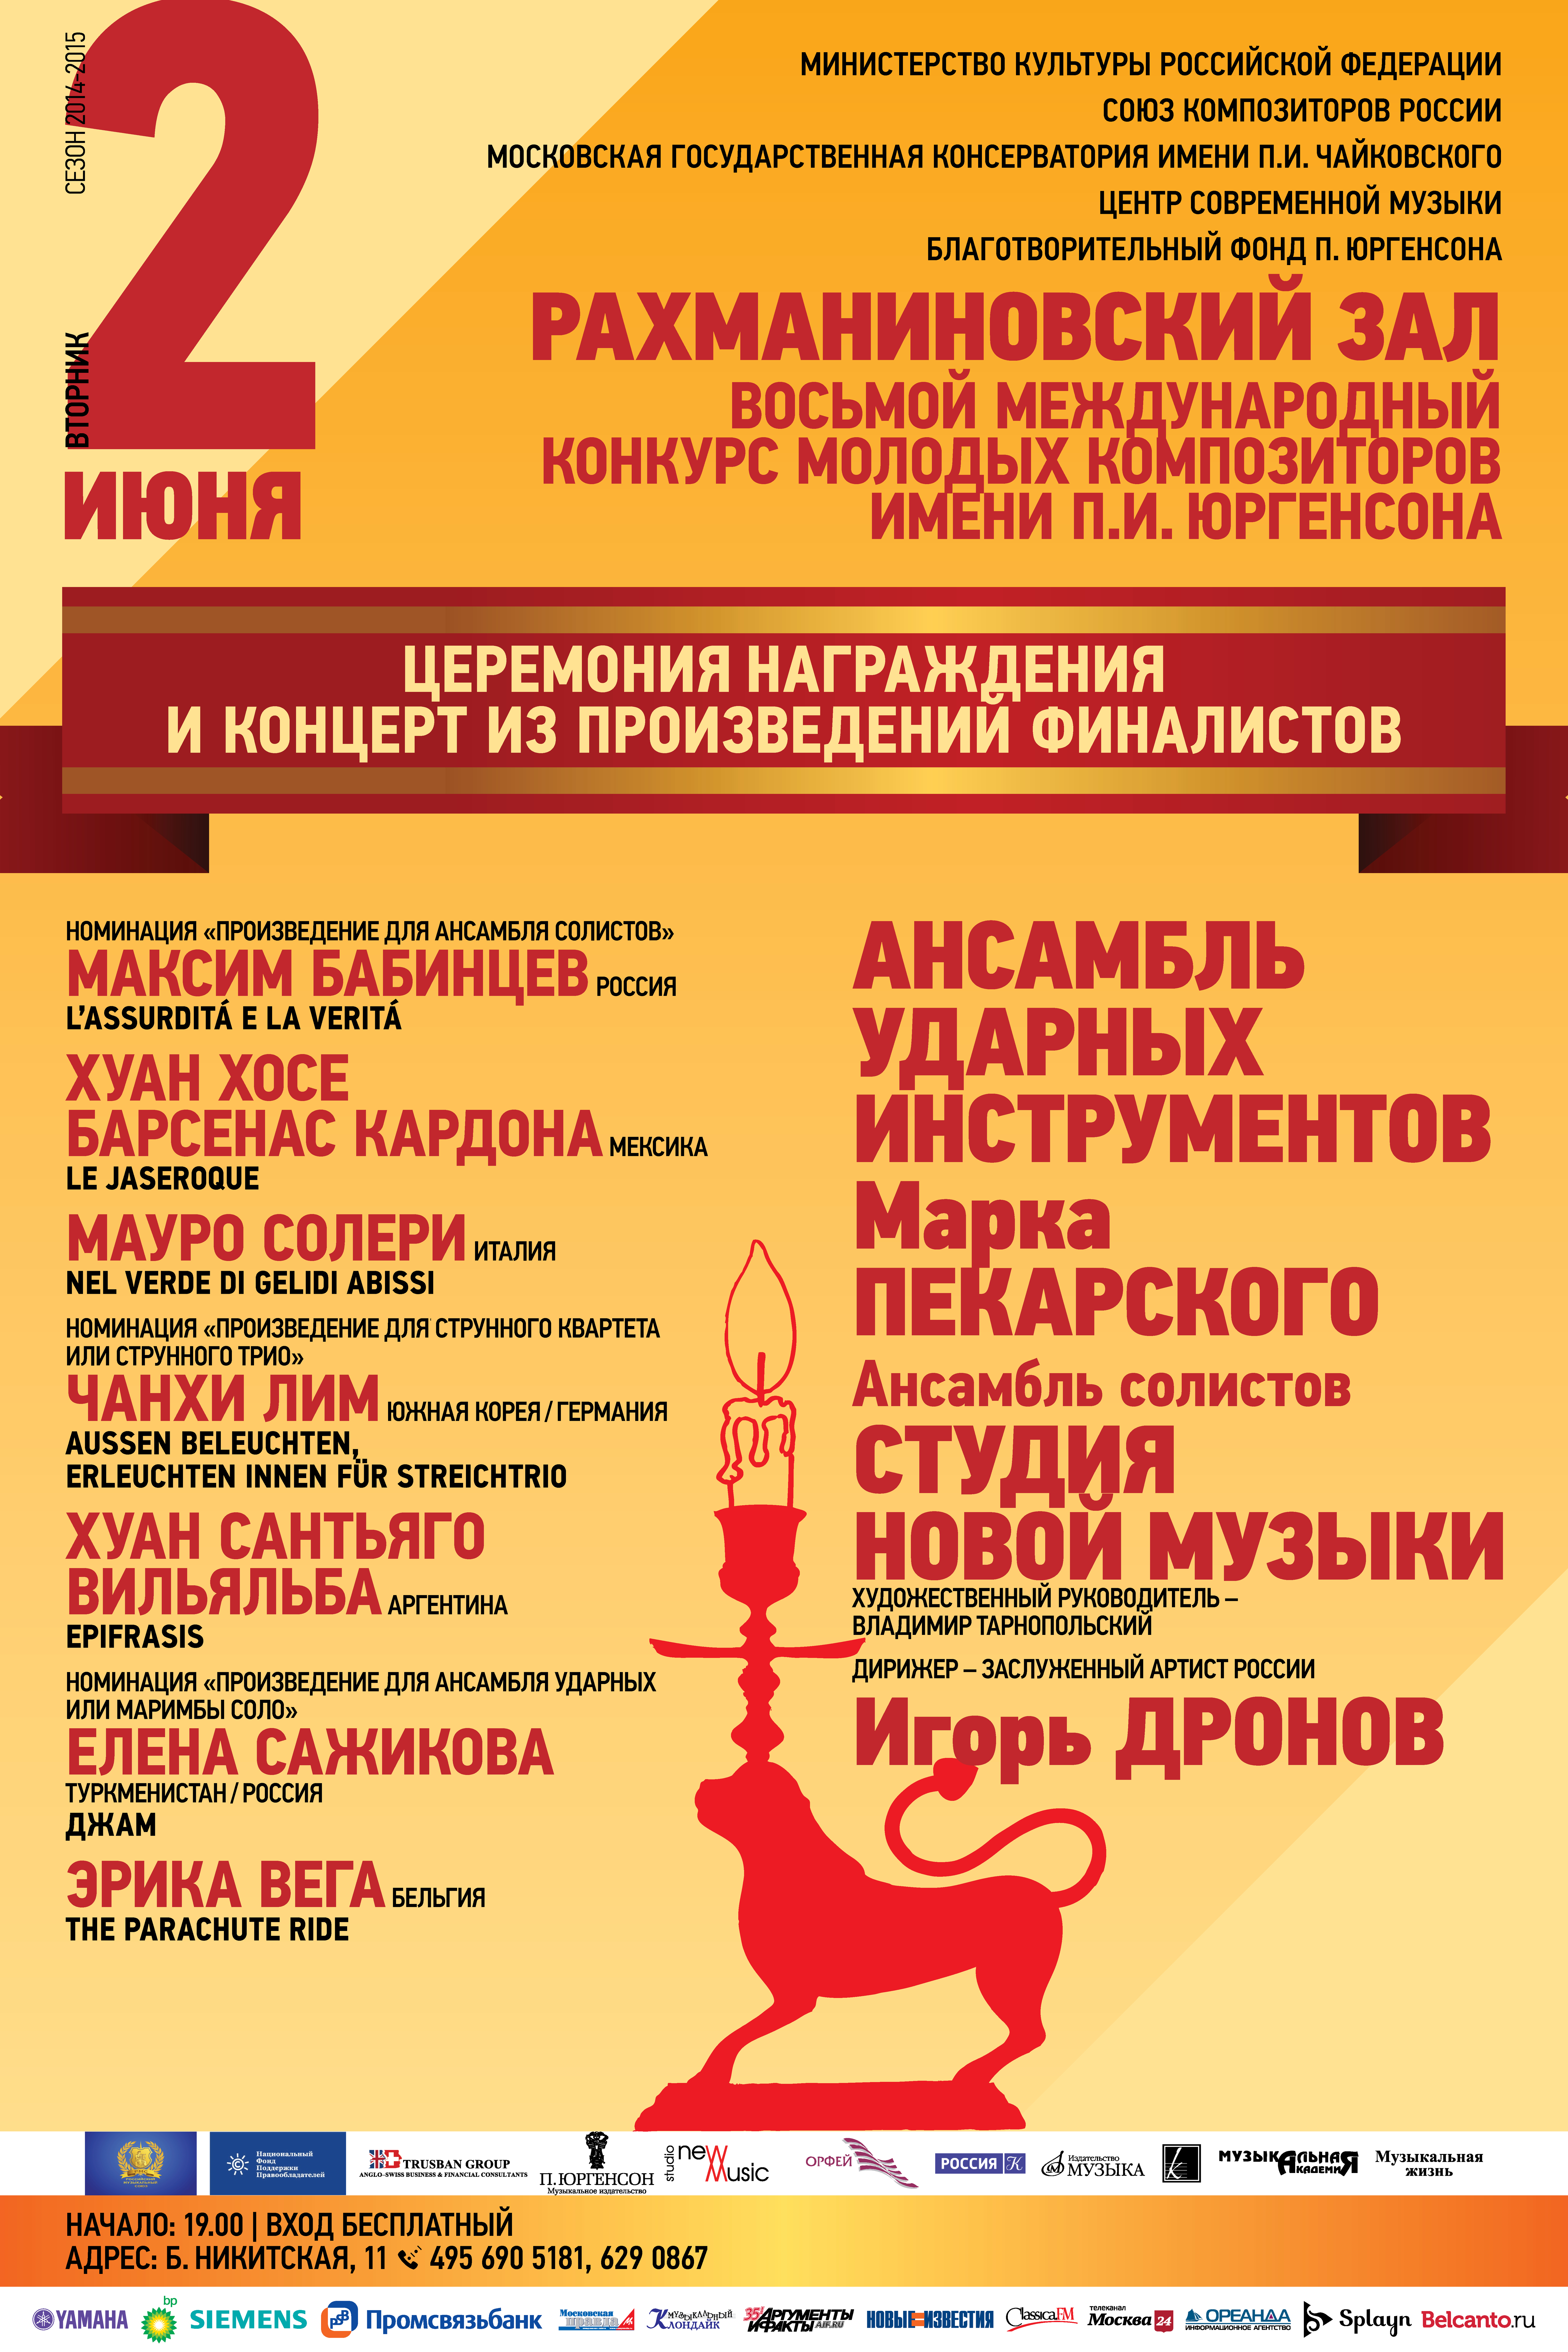 В Московской консерватории состоится финальный концерт конкурса молодых композиторов им. Юргенсона, проходящего при поддержке НФПП